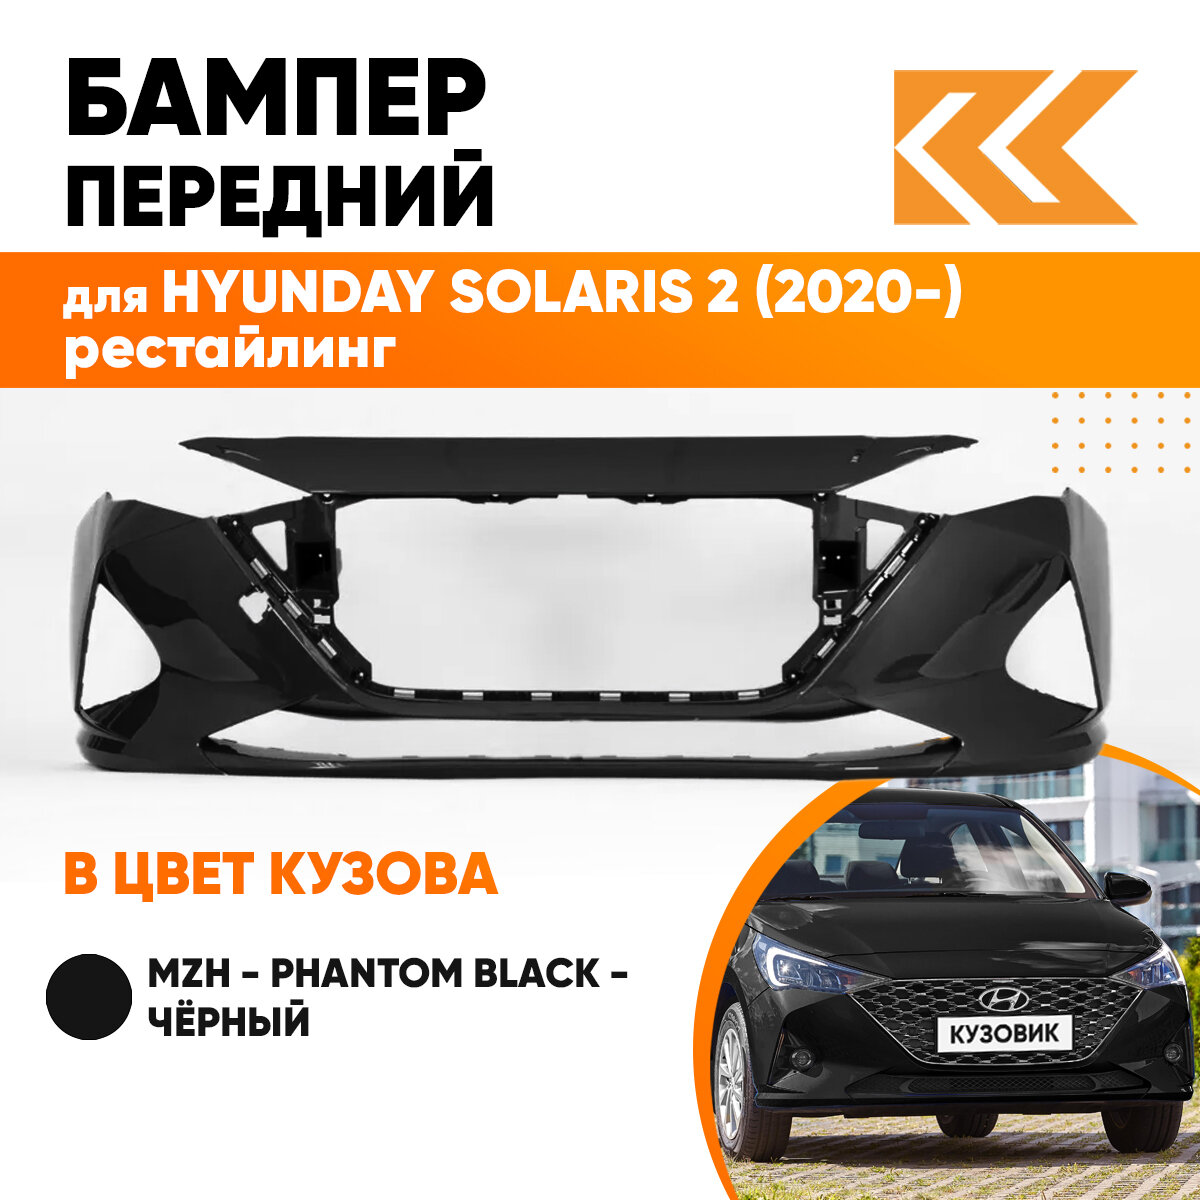 Бампер передний в цвет кузова Hyundai Solaris 2 Хендай Солярис (2020-) рестайлинг MZH - PHANTOM BLACK - Чёрный